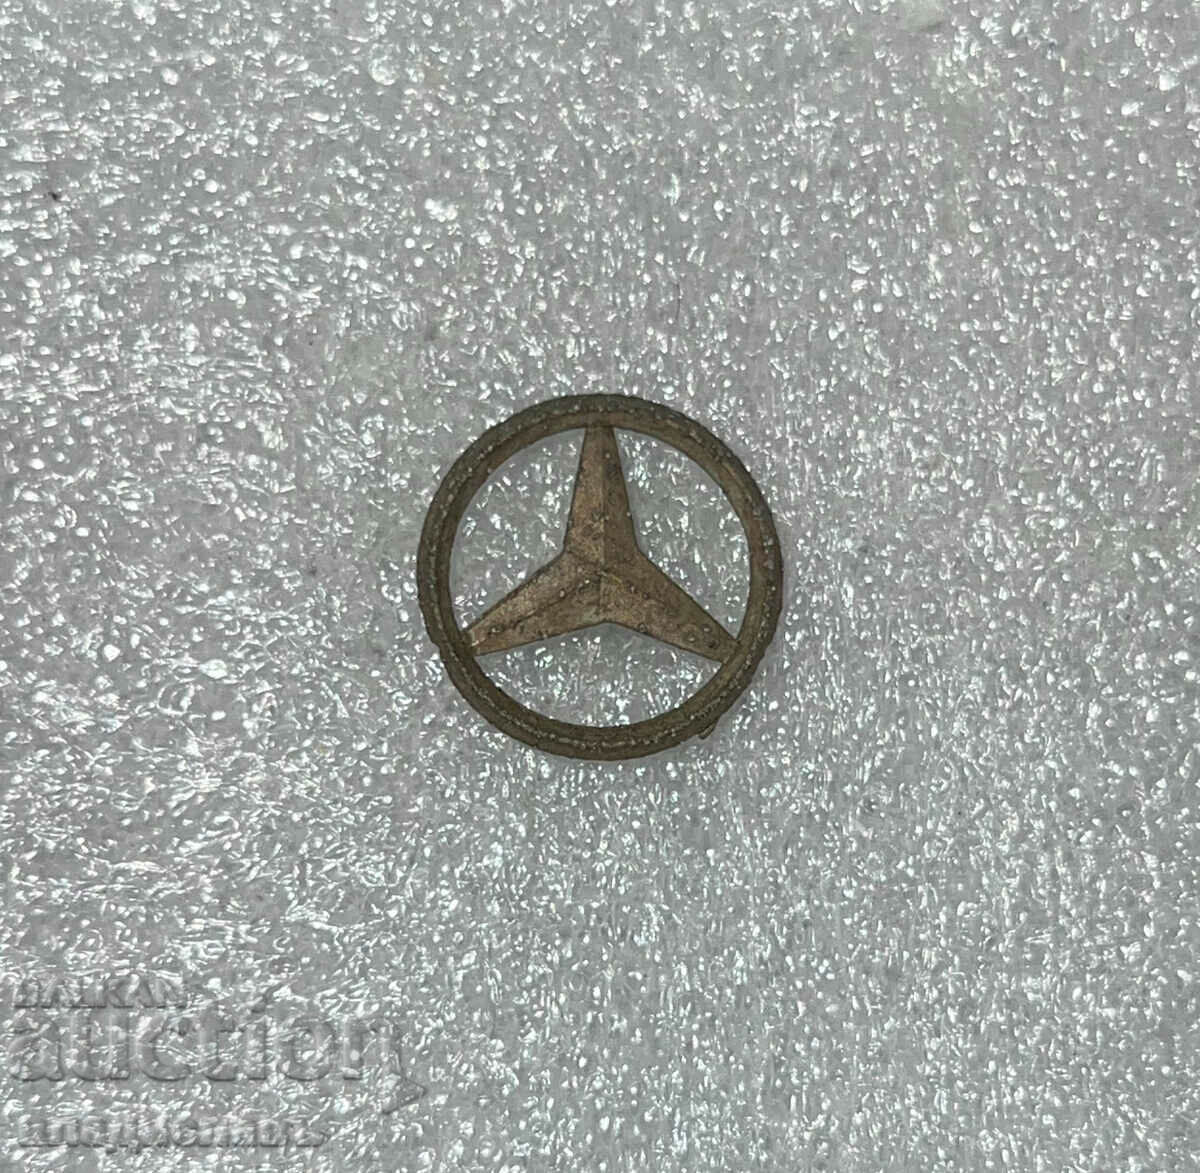 σήμα Αυτοκίνητα Mercedes Γερμανίας χωρίς κούμπωμα!